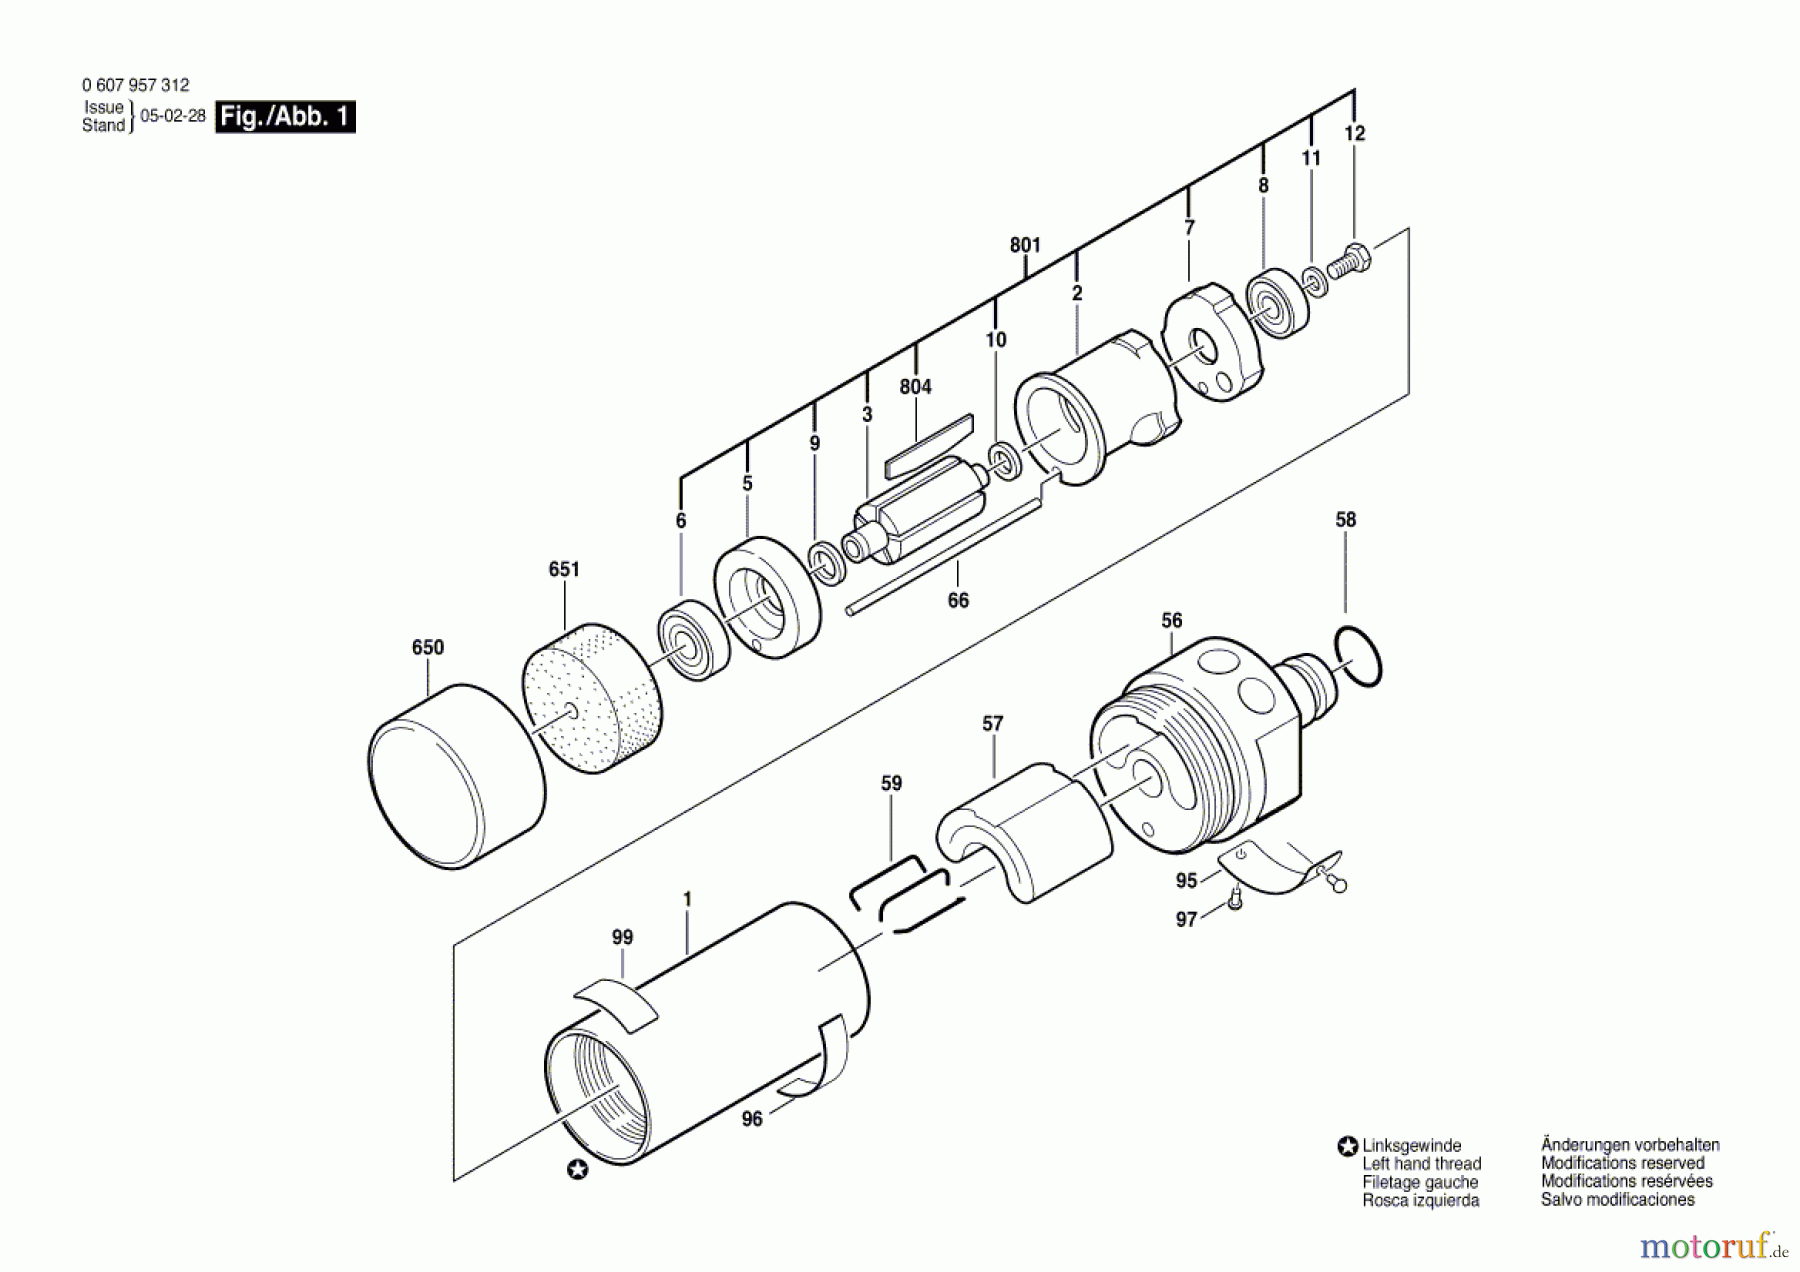  Bosch Werkzeug Einbaumotor 740 WATT-SERIE Seite 1